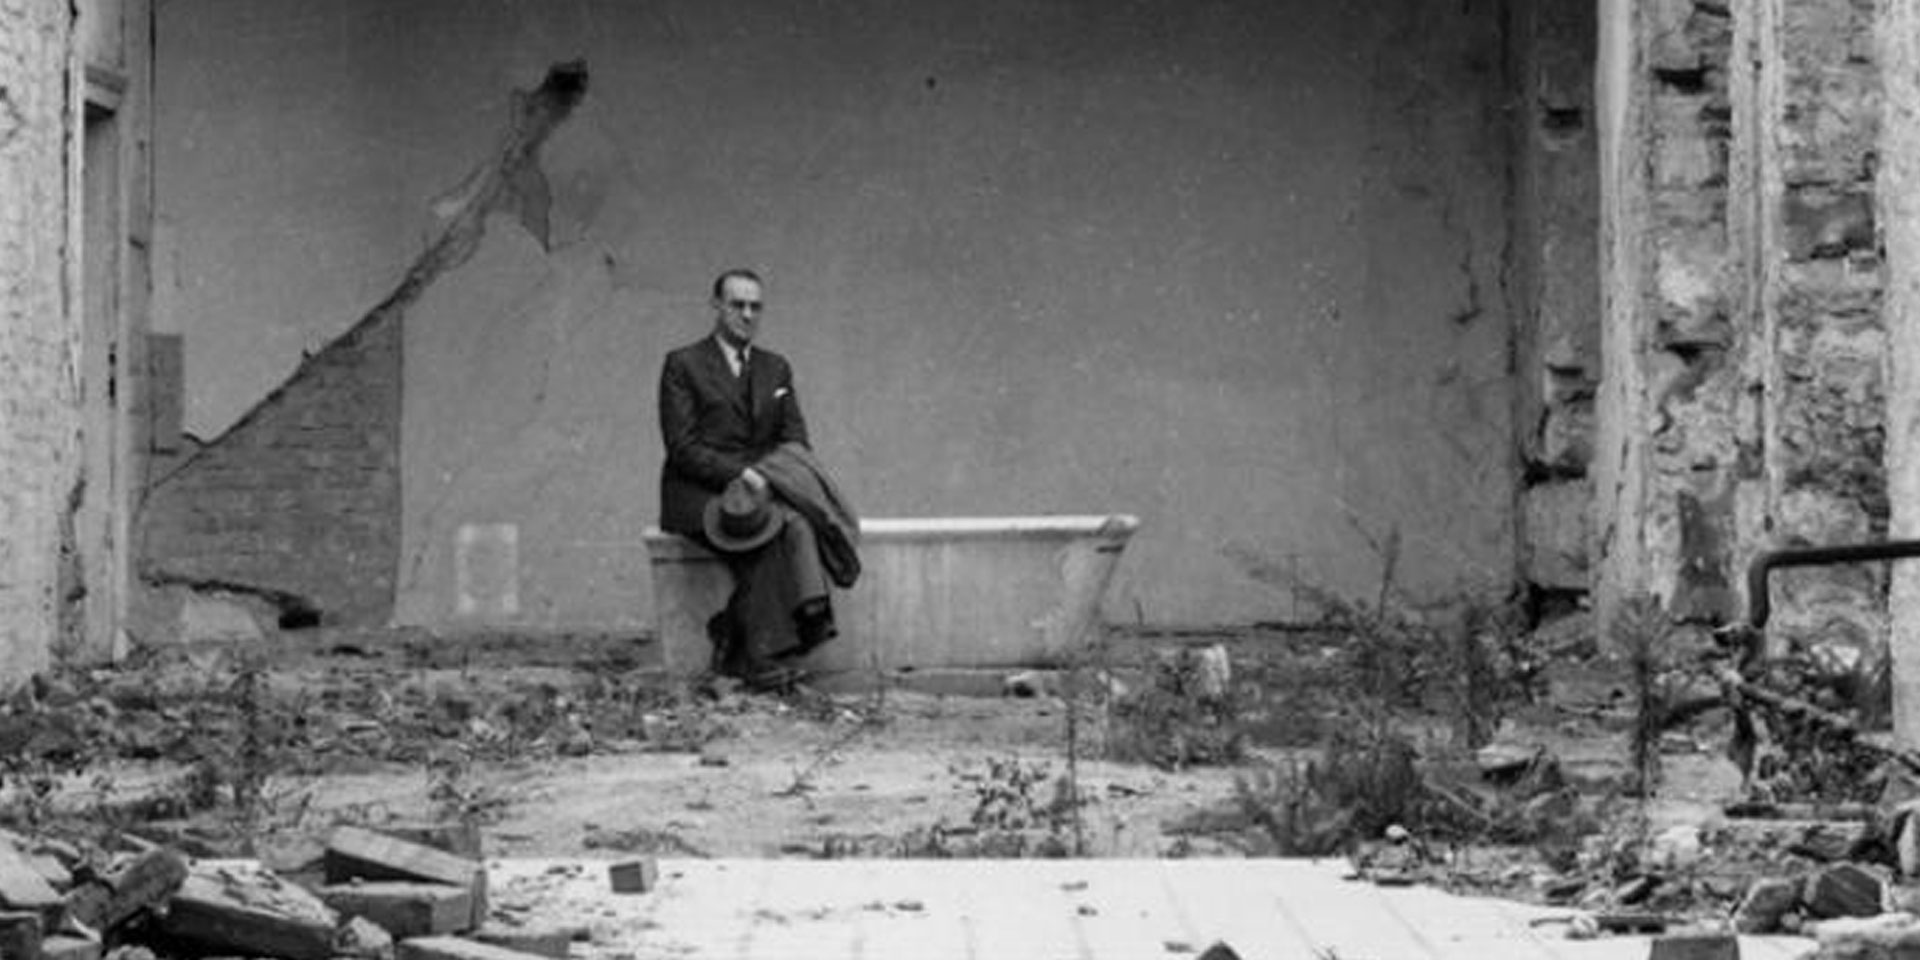 Carl Lutz seduto su una vasca da bagno in una stanza distrutta dalla guerra.